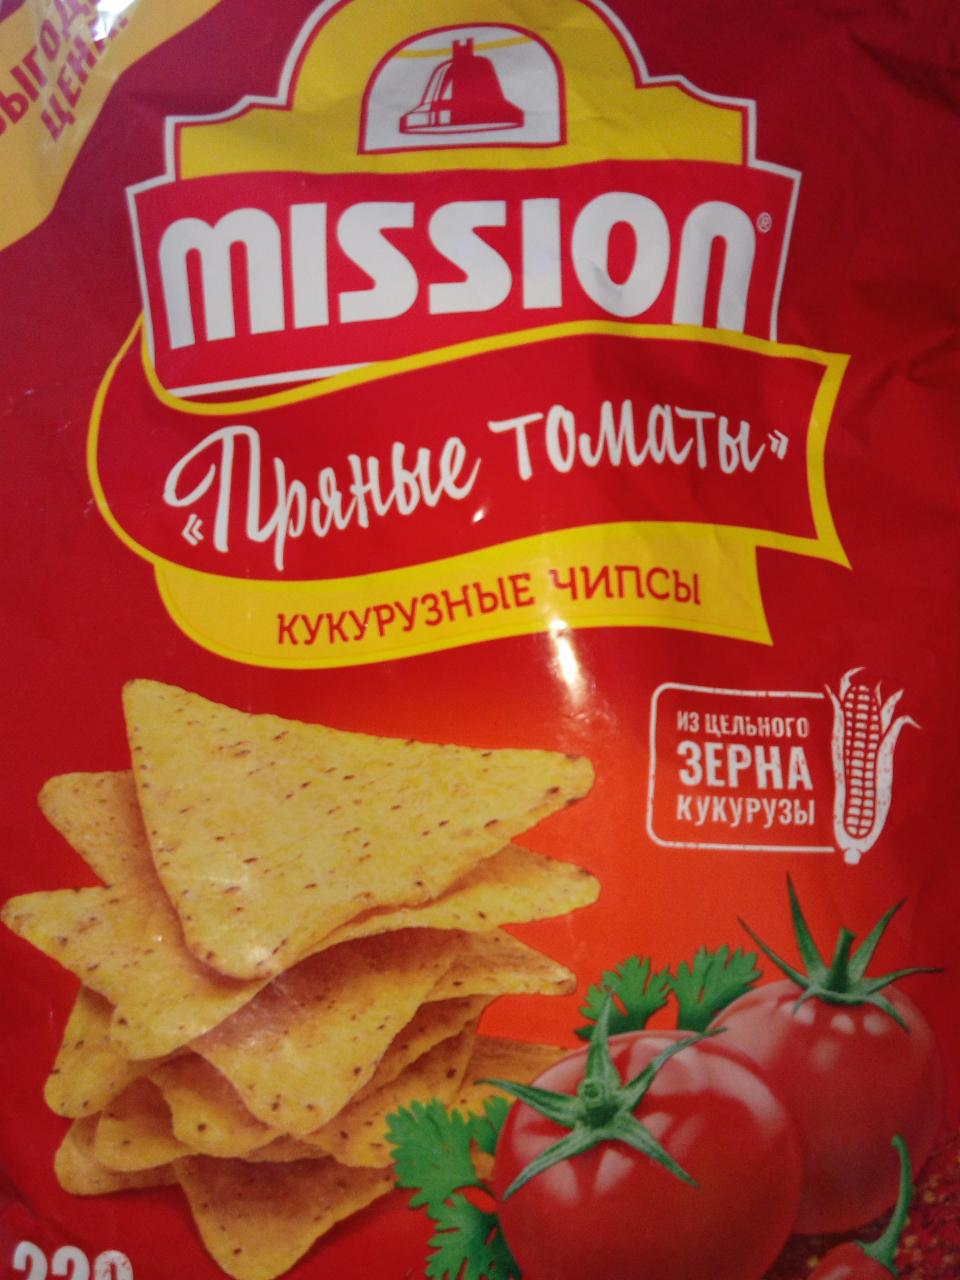 Фото - кукурузные чипсы пряные томаты Mission